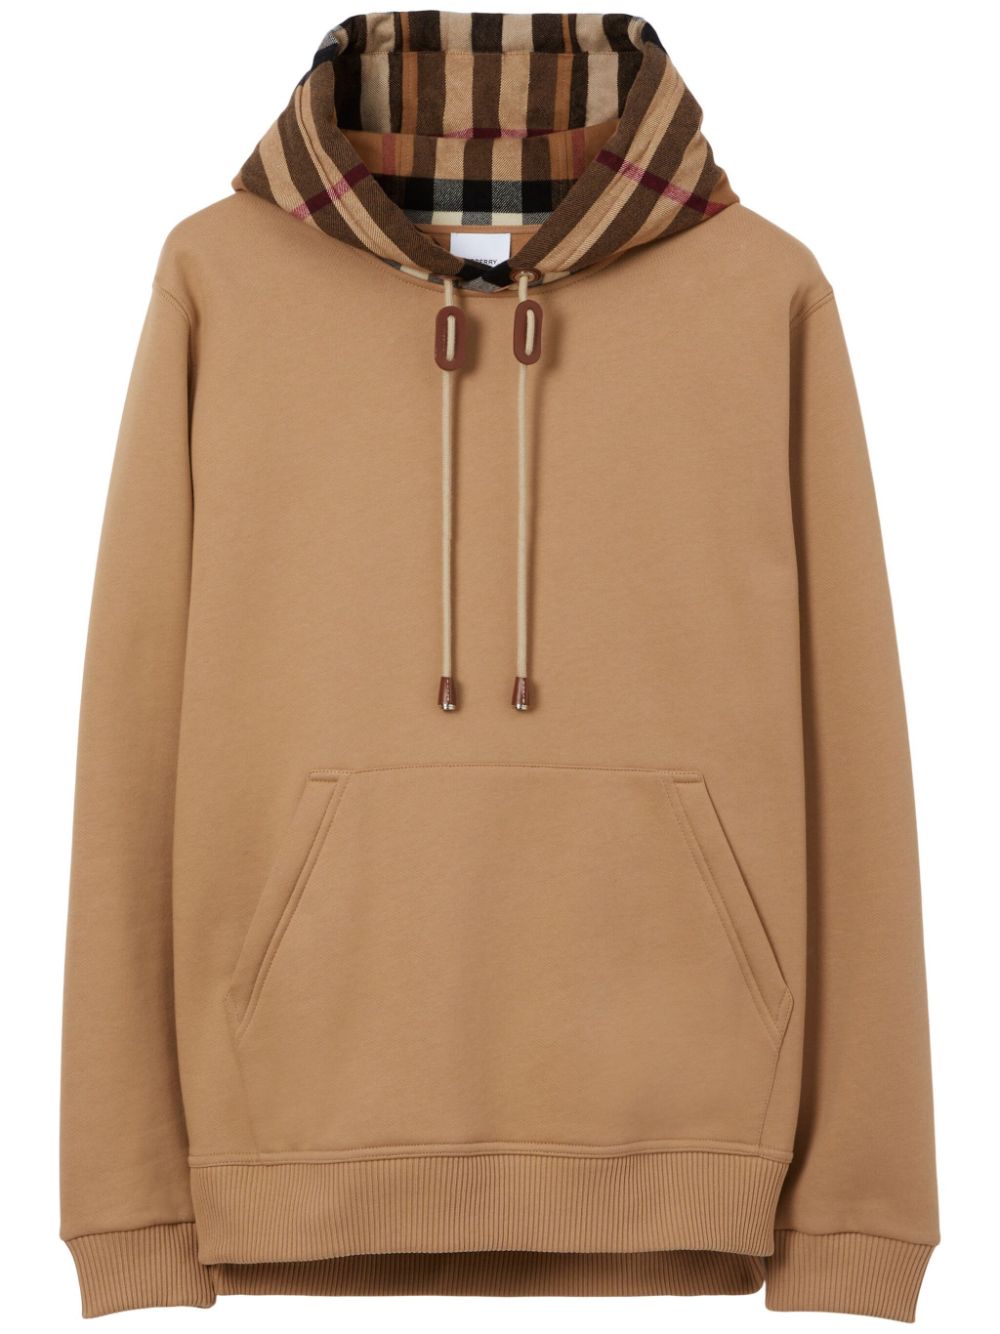 Burberry vintage-print hoodie - Brown